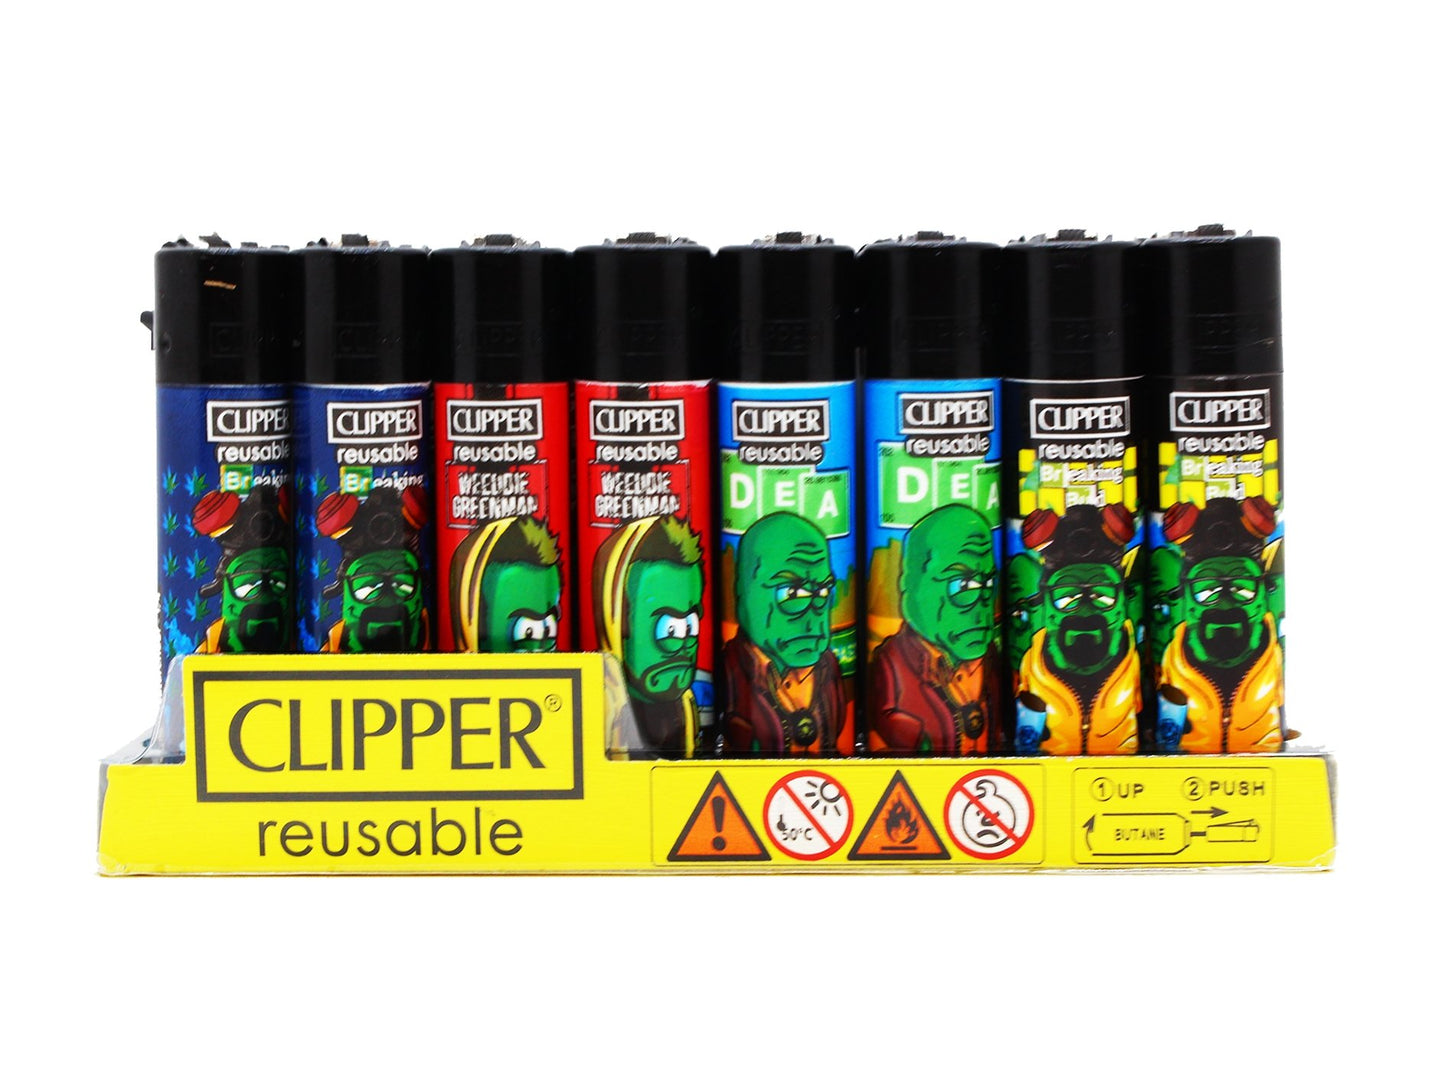 CLIPPER Lighters Printed 48's Various Designs - Breaking Bad - VIR Wholesale